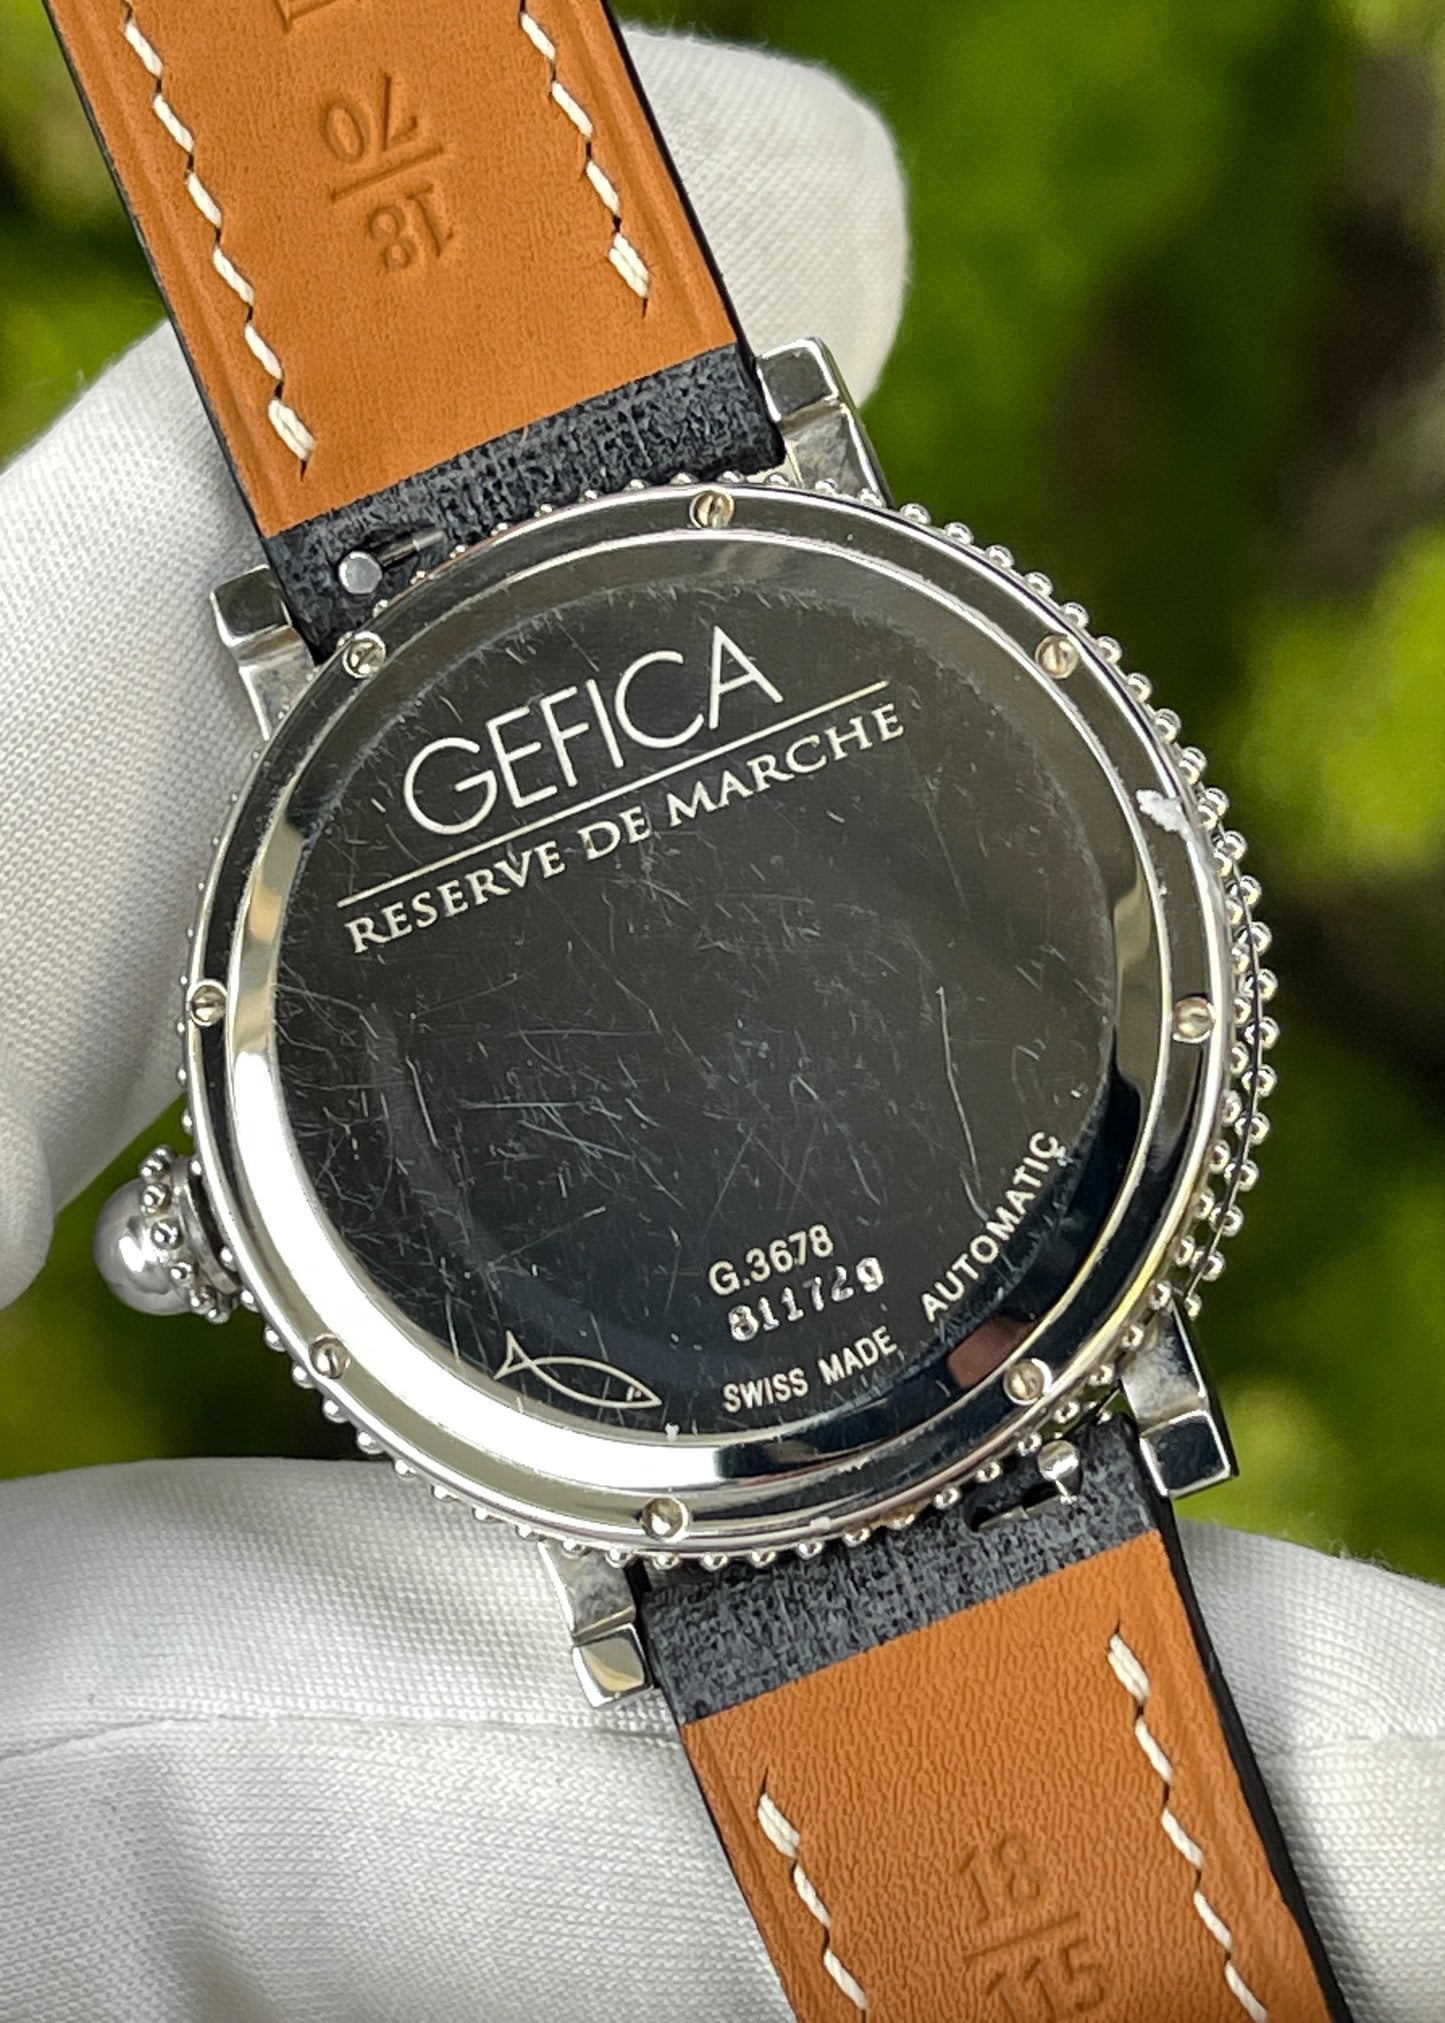 Gerald Genta Réserve de Marche Ref. G3678 - Serial 811729 (Pre-Owned)